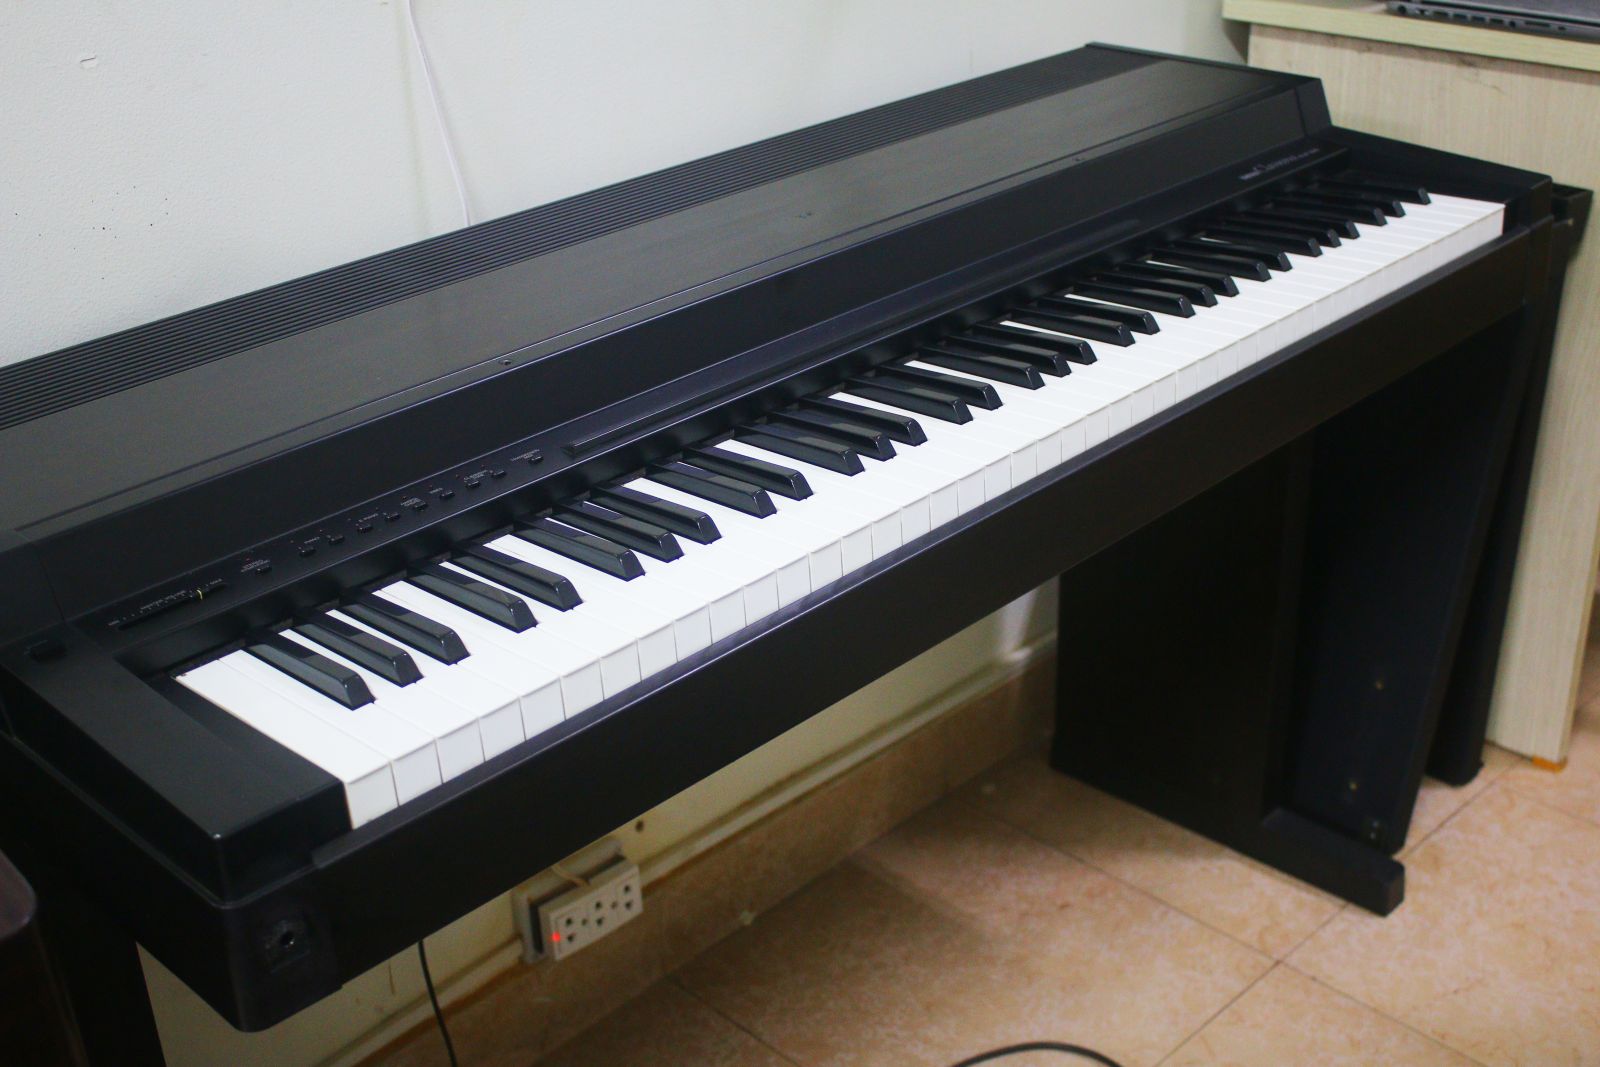 Những vấn đề có thể gặp phải khi tìm mua đàn Piano điện cũ